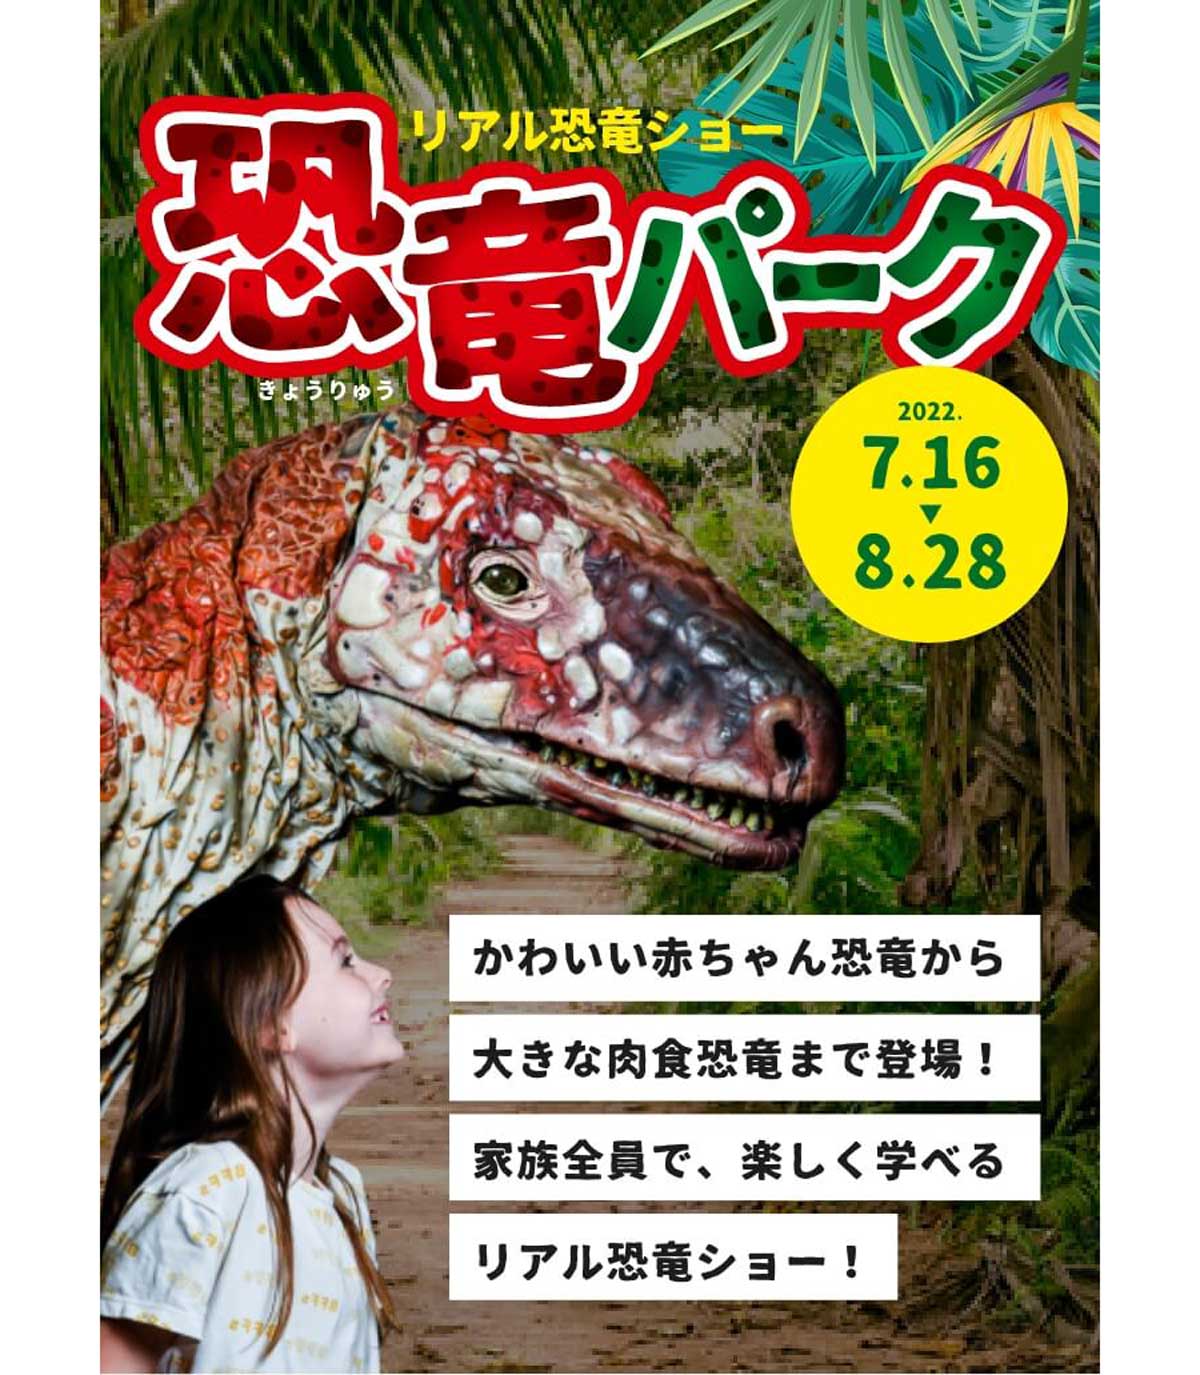 熊本地震の復興プロモーション「ミニチュアくまもと旅するモン」でARくまモンの写真を撮影！SNSフォトキャンペーンを開催中